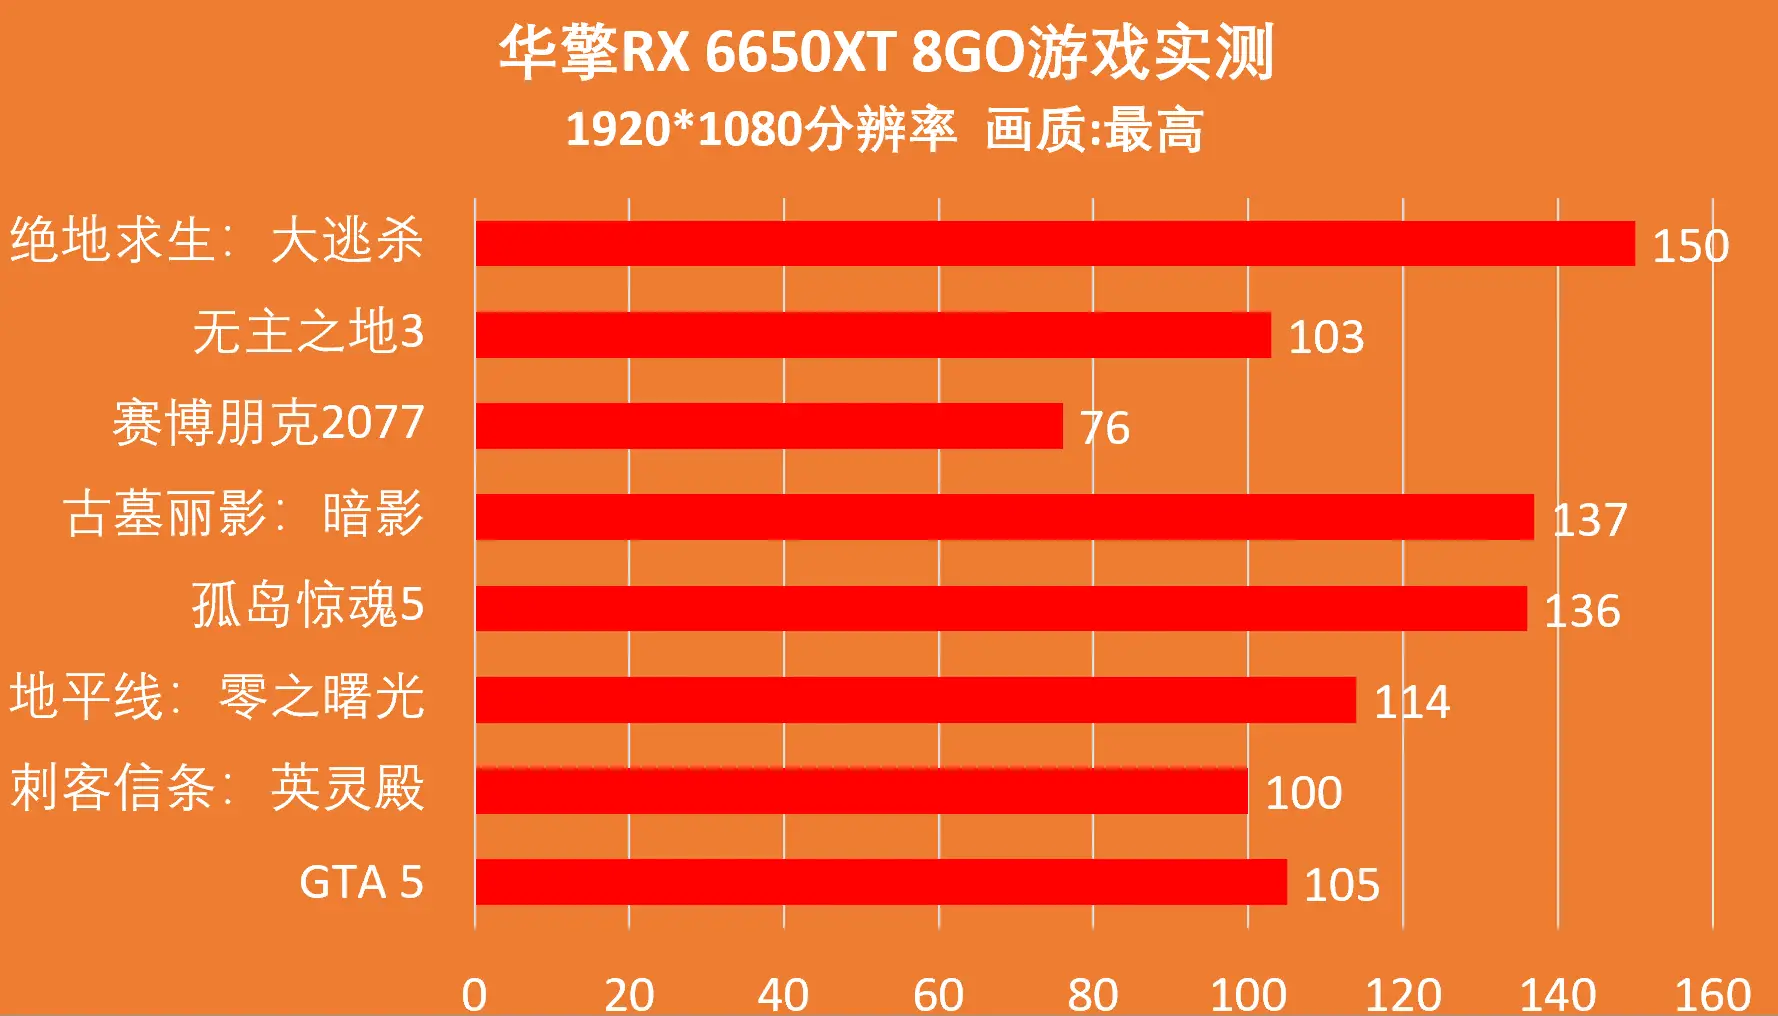 ddr5比ddr4贵3倍 DDR5内存条与DDR4价格对比及技术背景分析：深度剖析  第3张